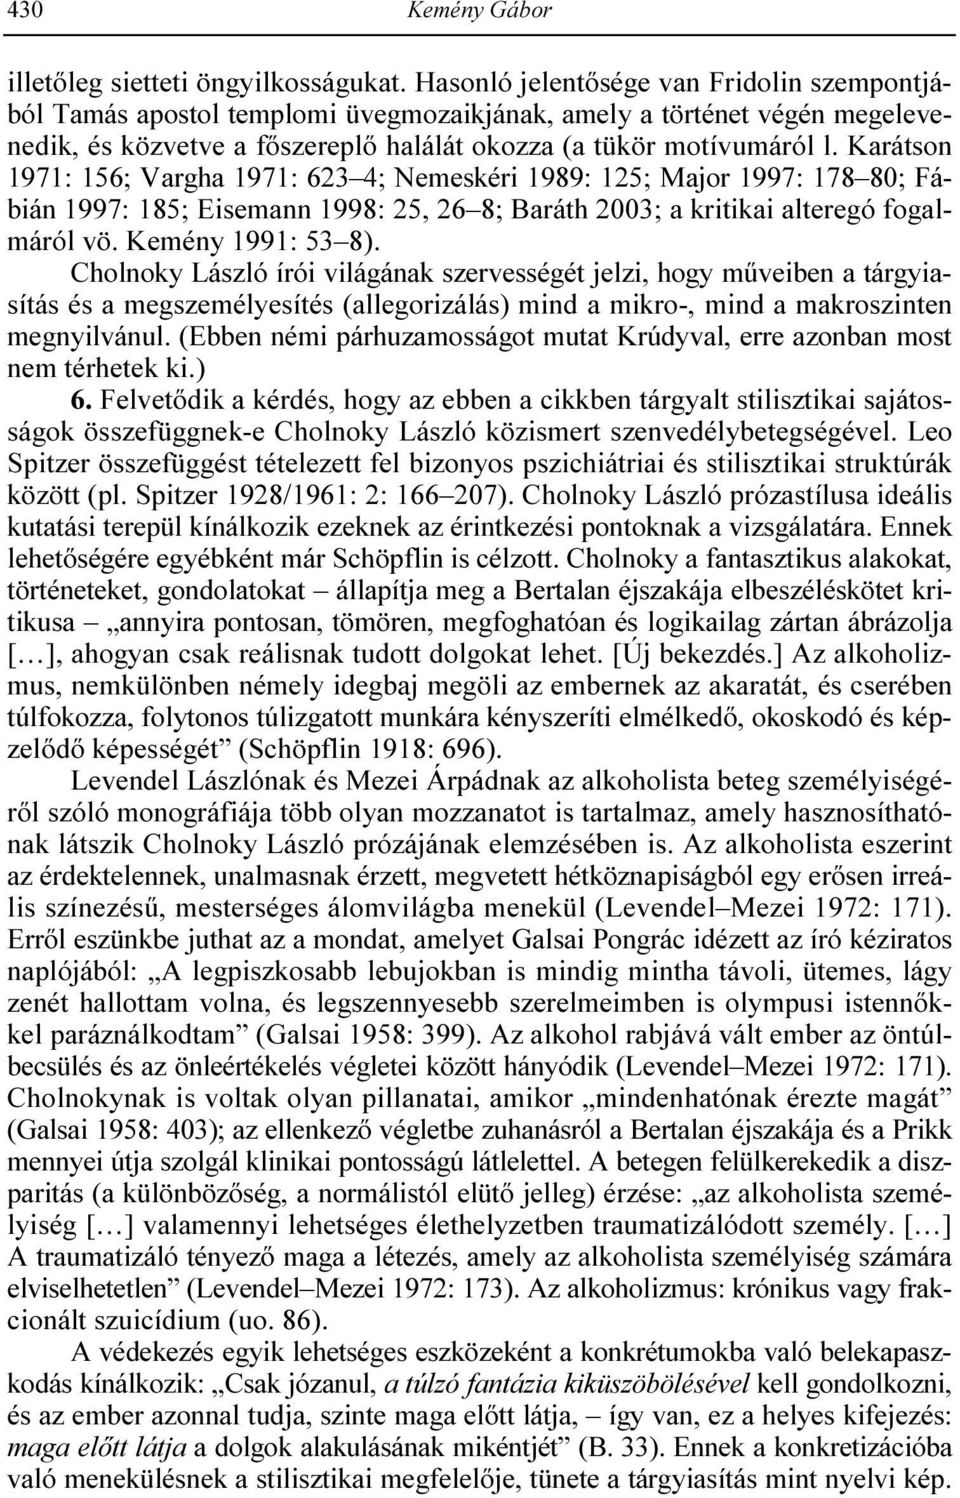 Tárgyiasító és allegorizáló metaforaalkotás Cholnoky László kisregényeiben  1 - PDF Free Download